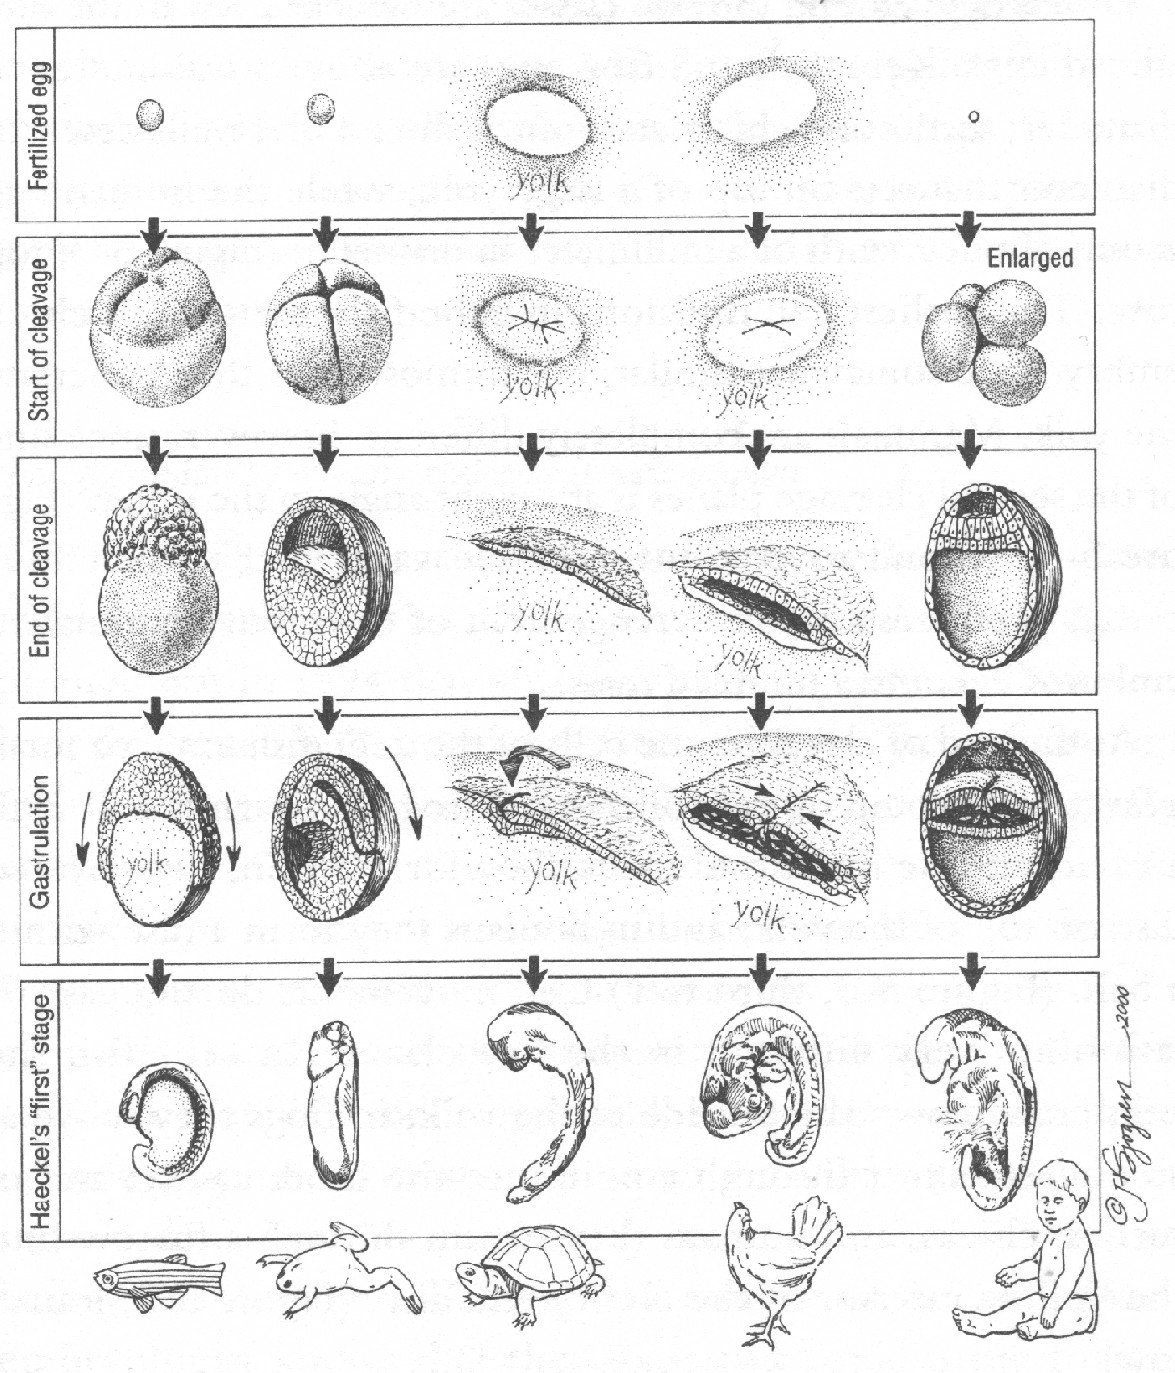 Стадии развития эмбрионов позвоночных. Схема эмбрионального развития. Периодизация эмбрионального развития. Стадии эмбрионального развития радужной форели. Этапы эмбрионального развития рыб.